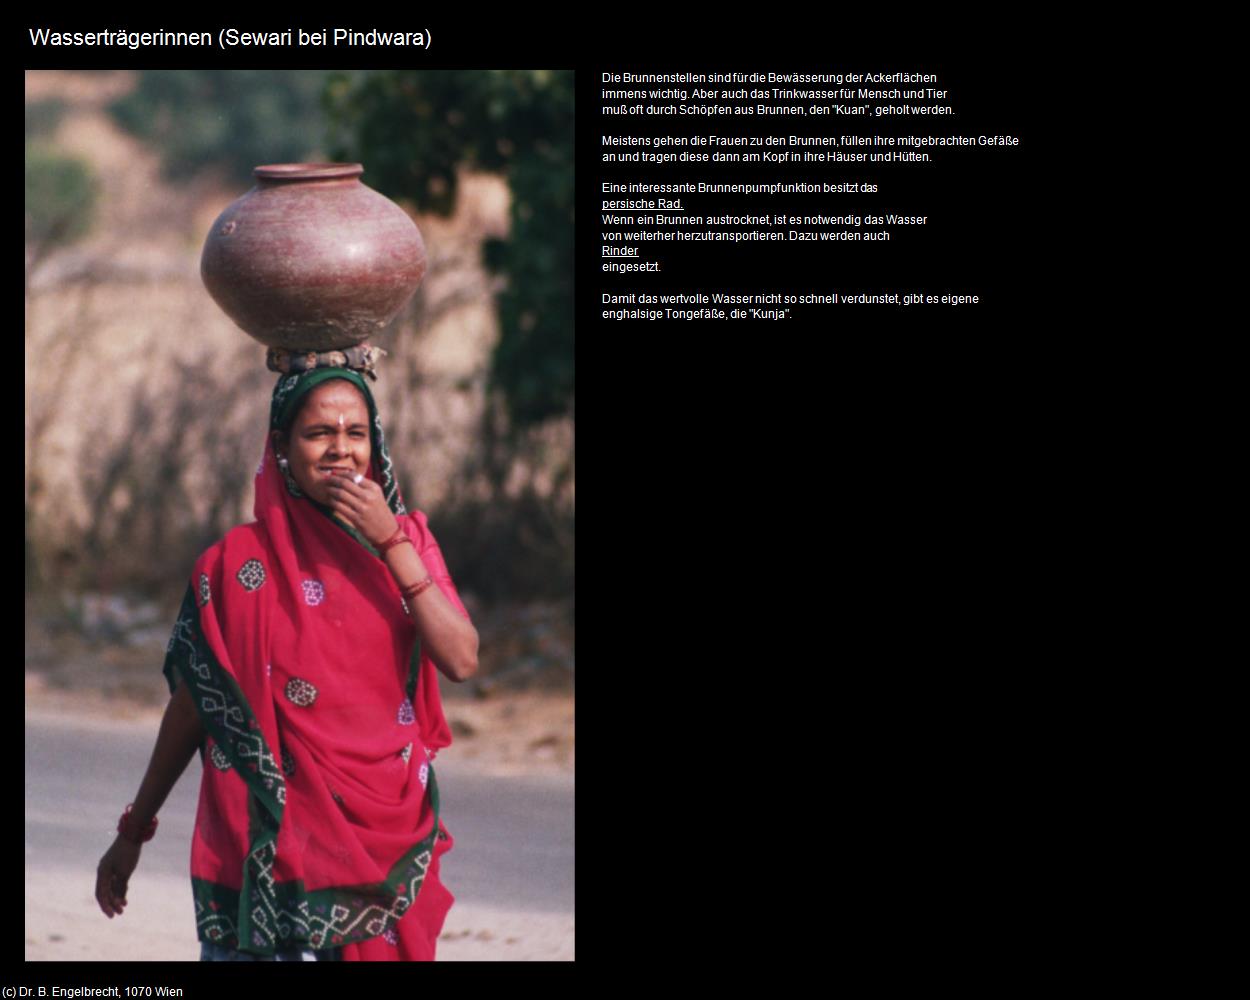 Wasserträgerinnen (Sewari) (Pindwara) in Rajasthan - das Land der Könige(c)B.Engelbrecht